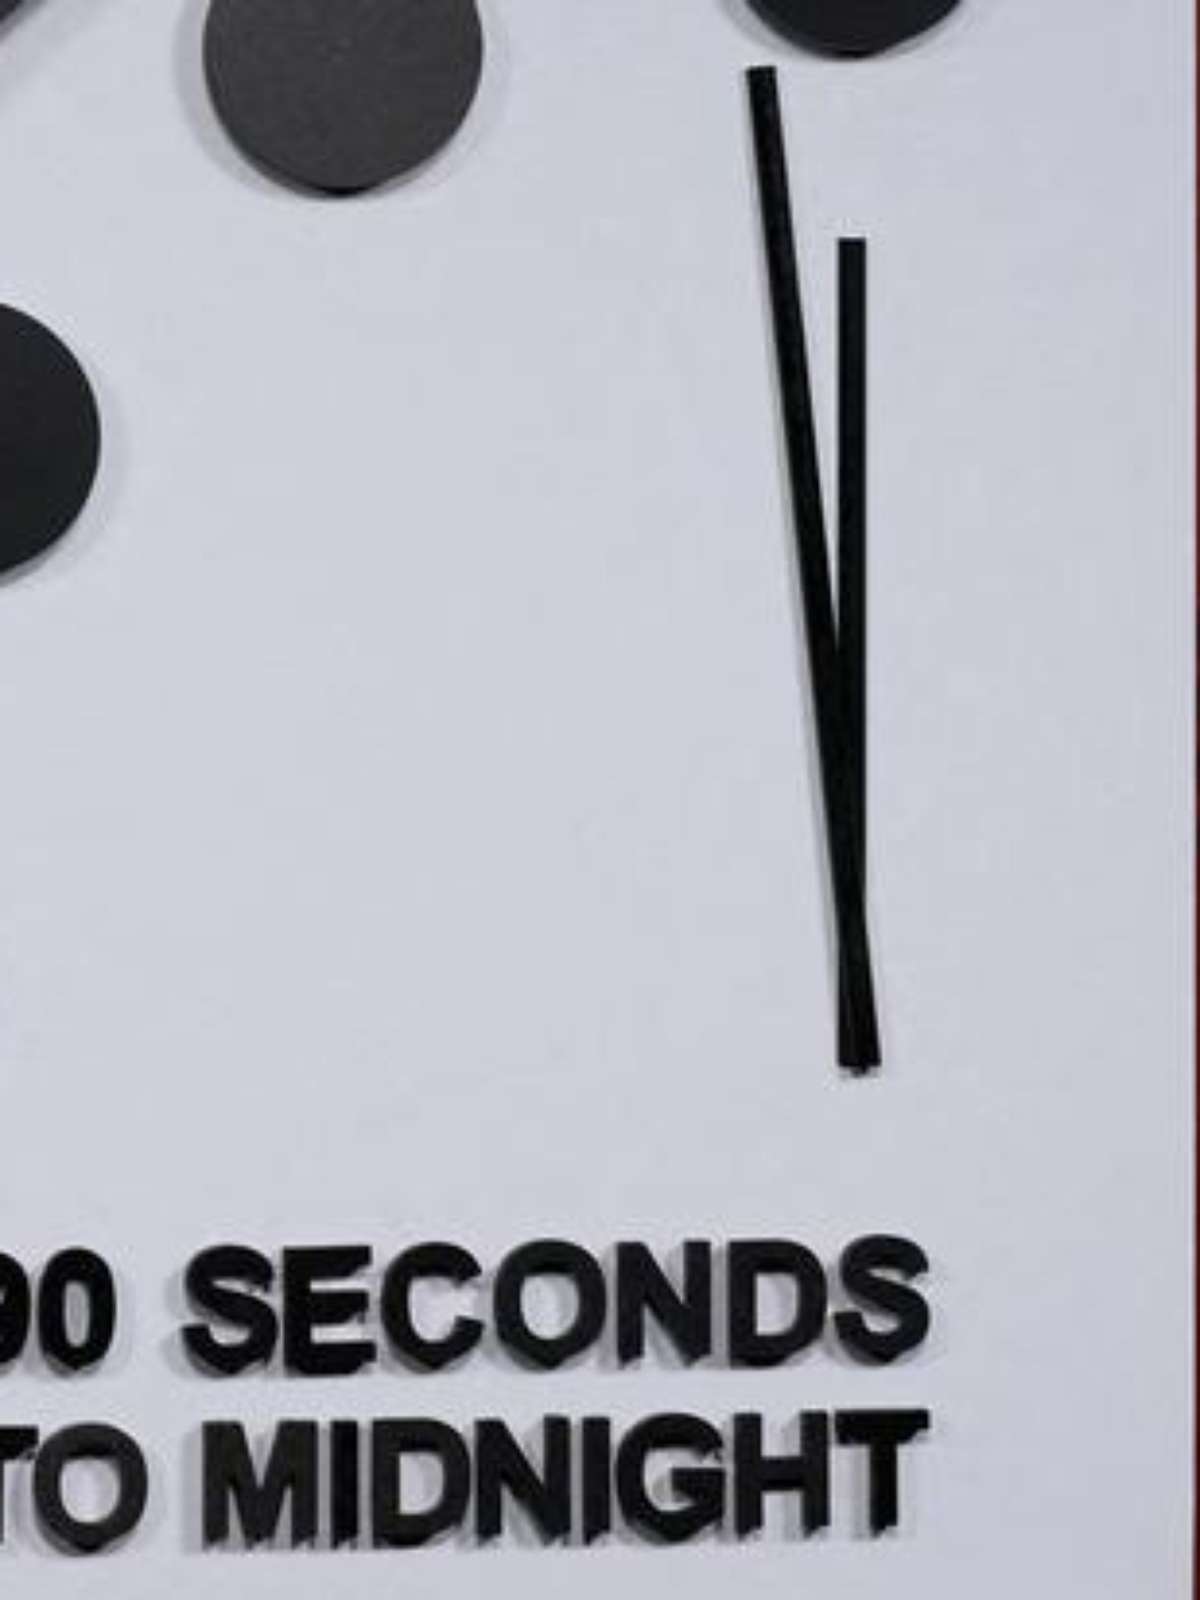 O 'Relógio do Juízo Final' está a 90 segundos da catástrofe global